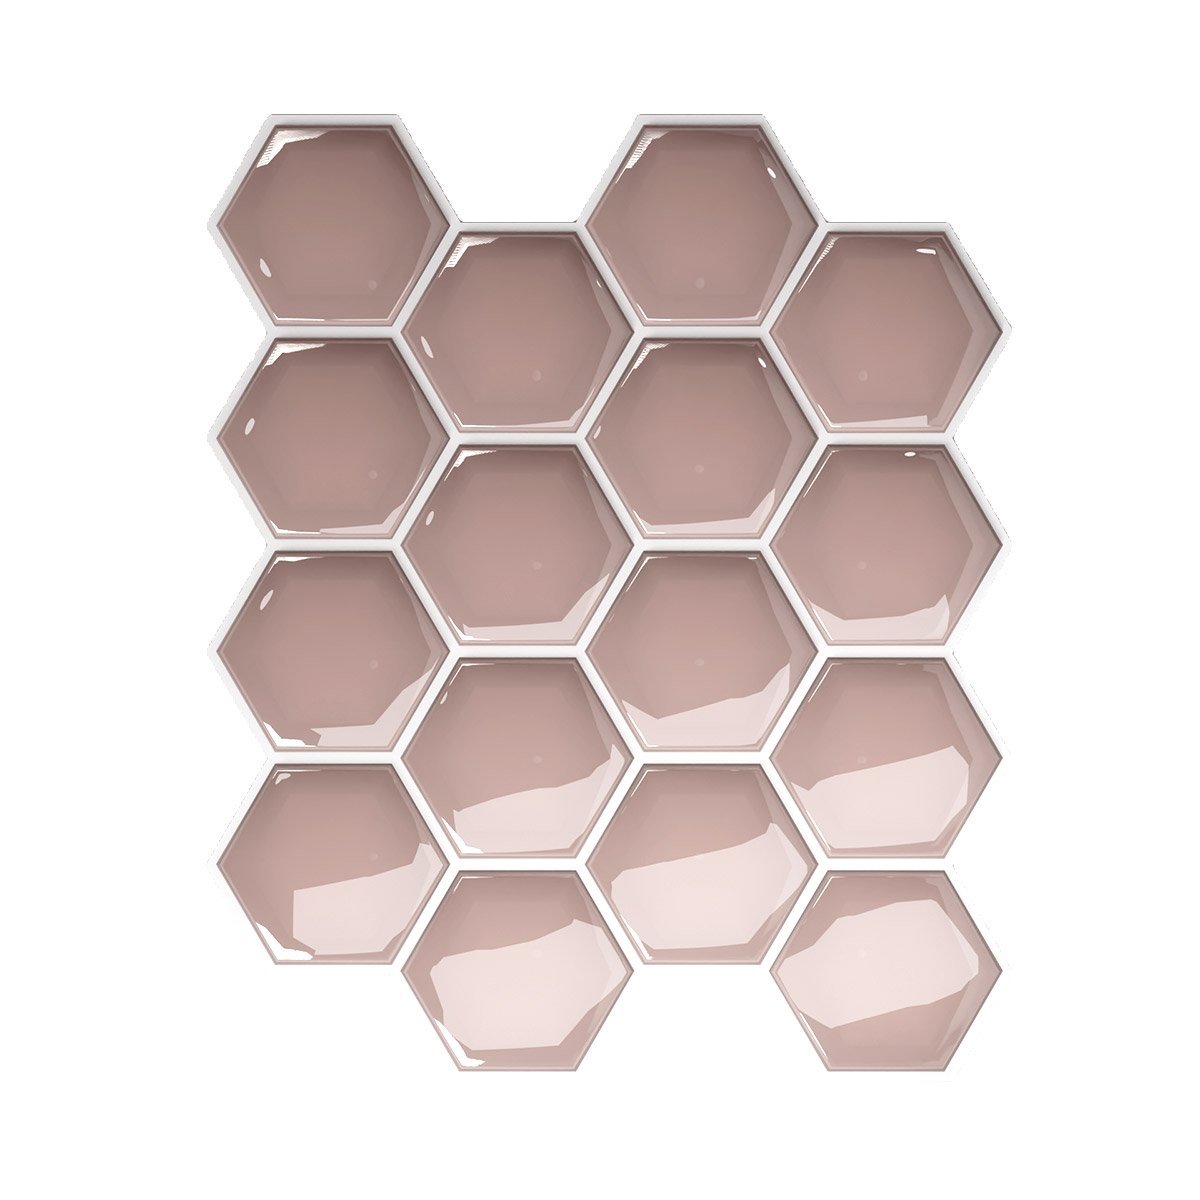 Pastilha Hexagonal Rosé Gold com Rejunte Branco Lavável Banheiro Cozinha Sala - 1